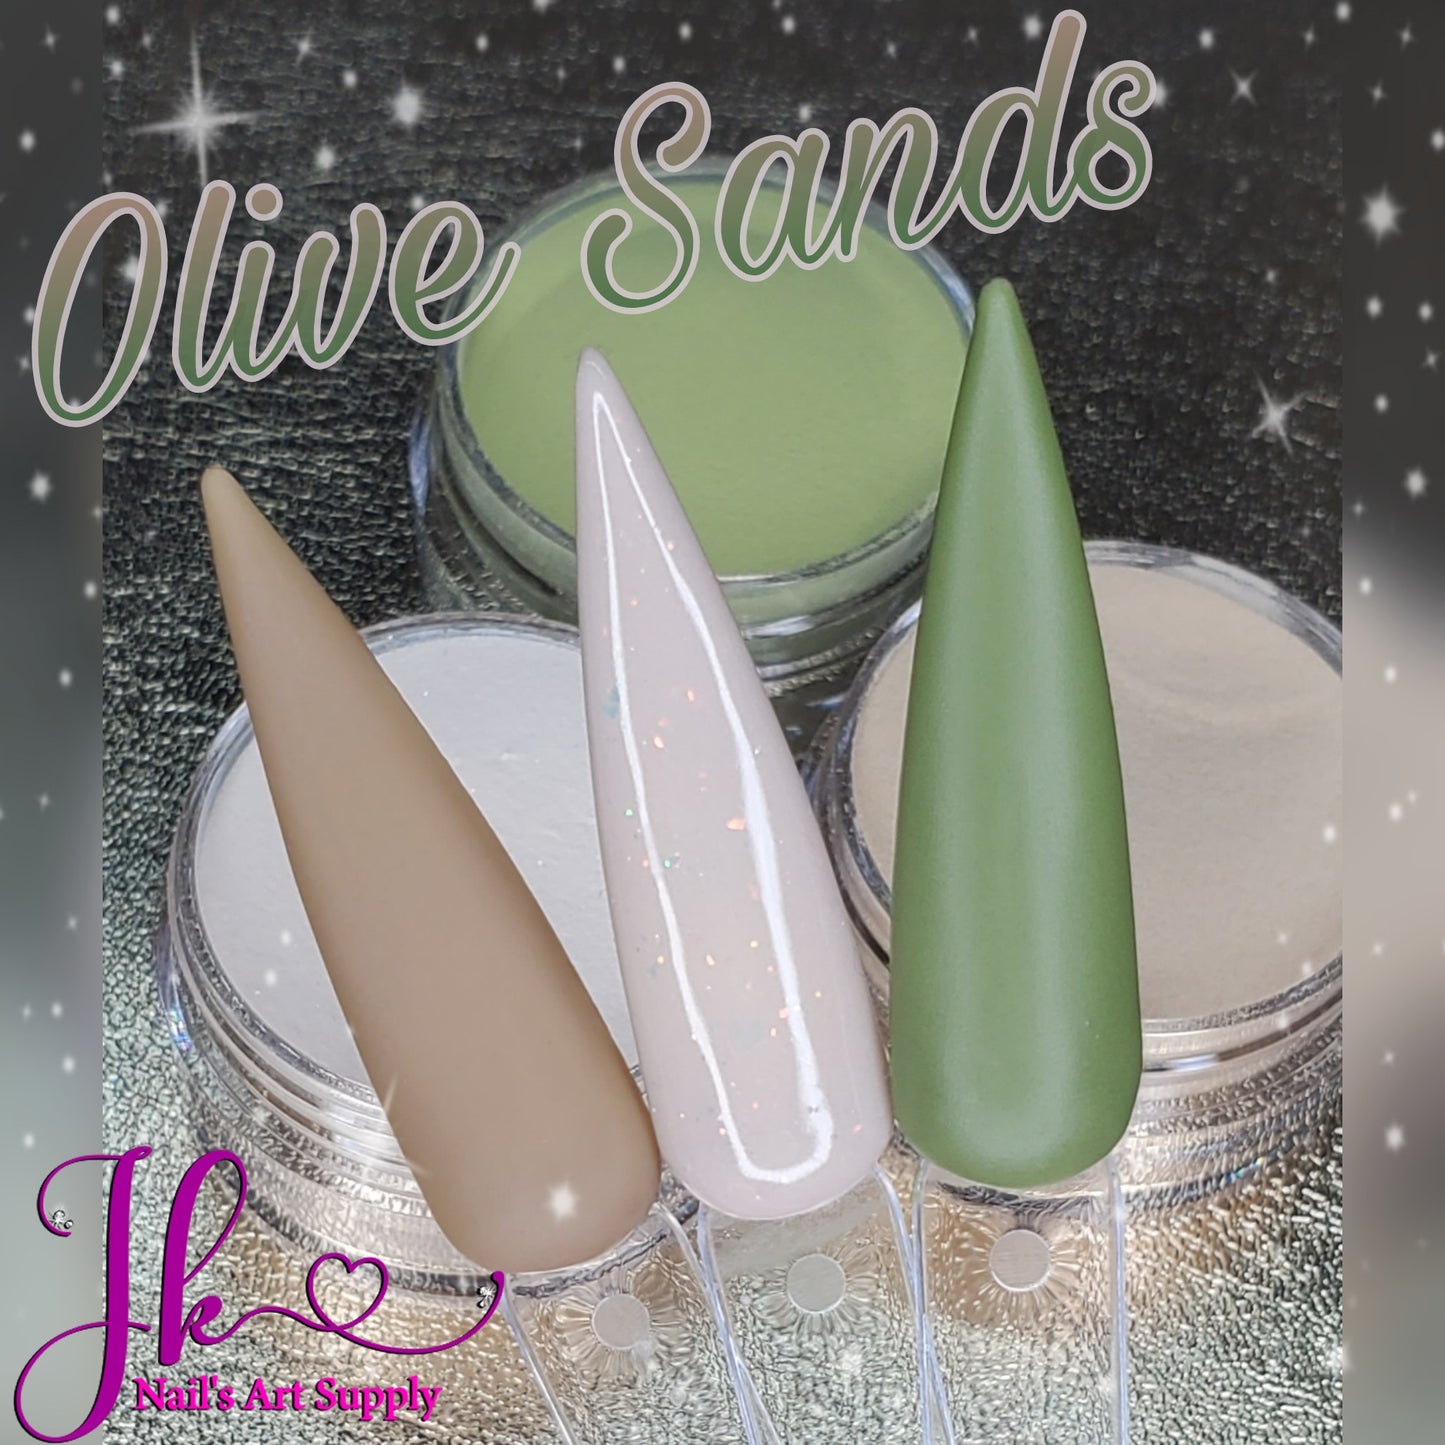 Olive Sands